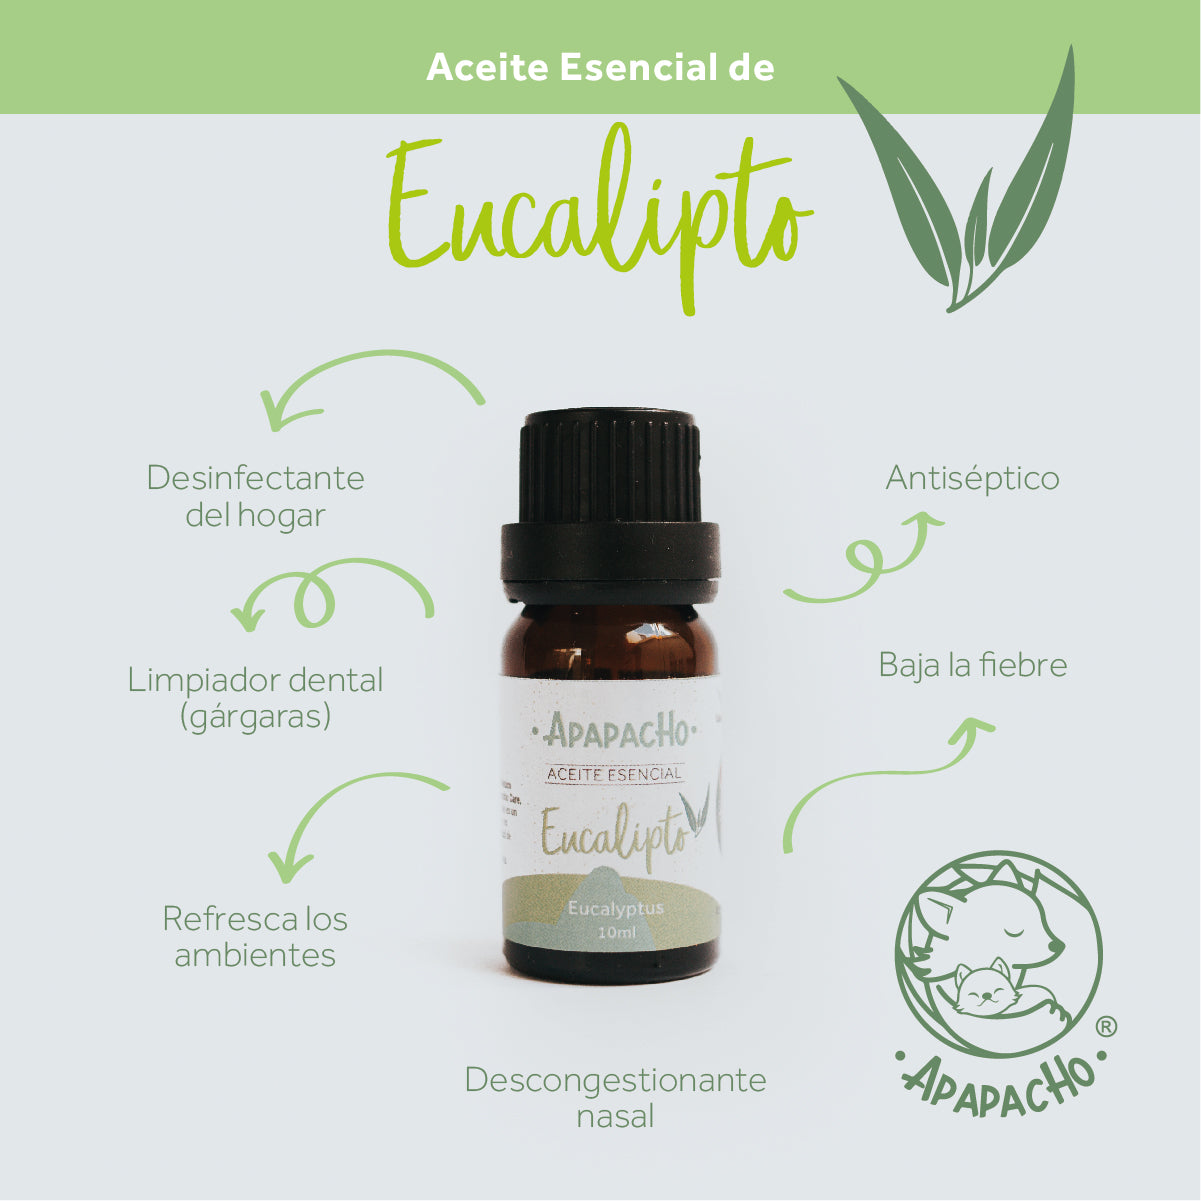 Como utilizar el aceite esencial de Eucalipto